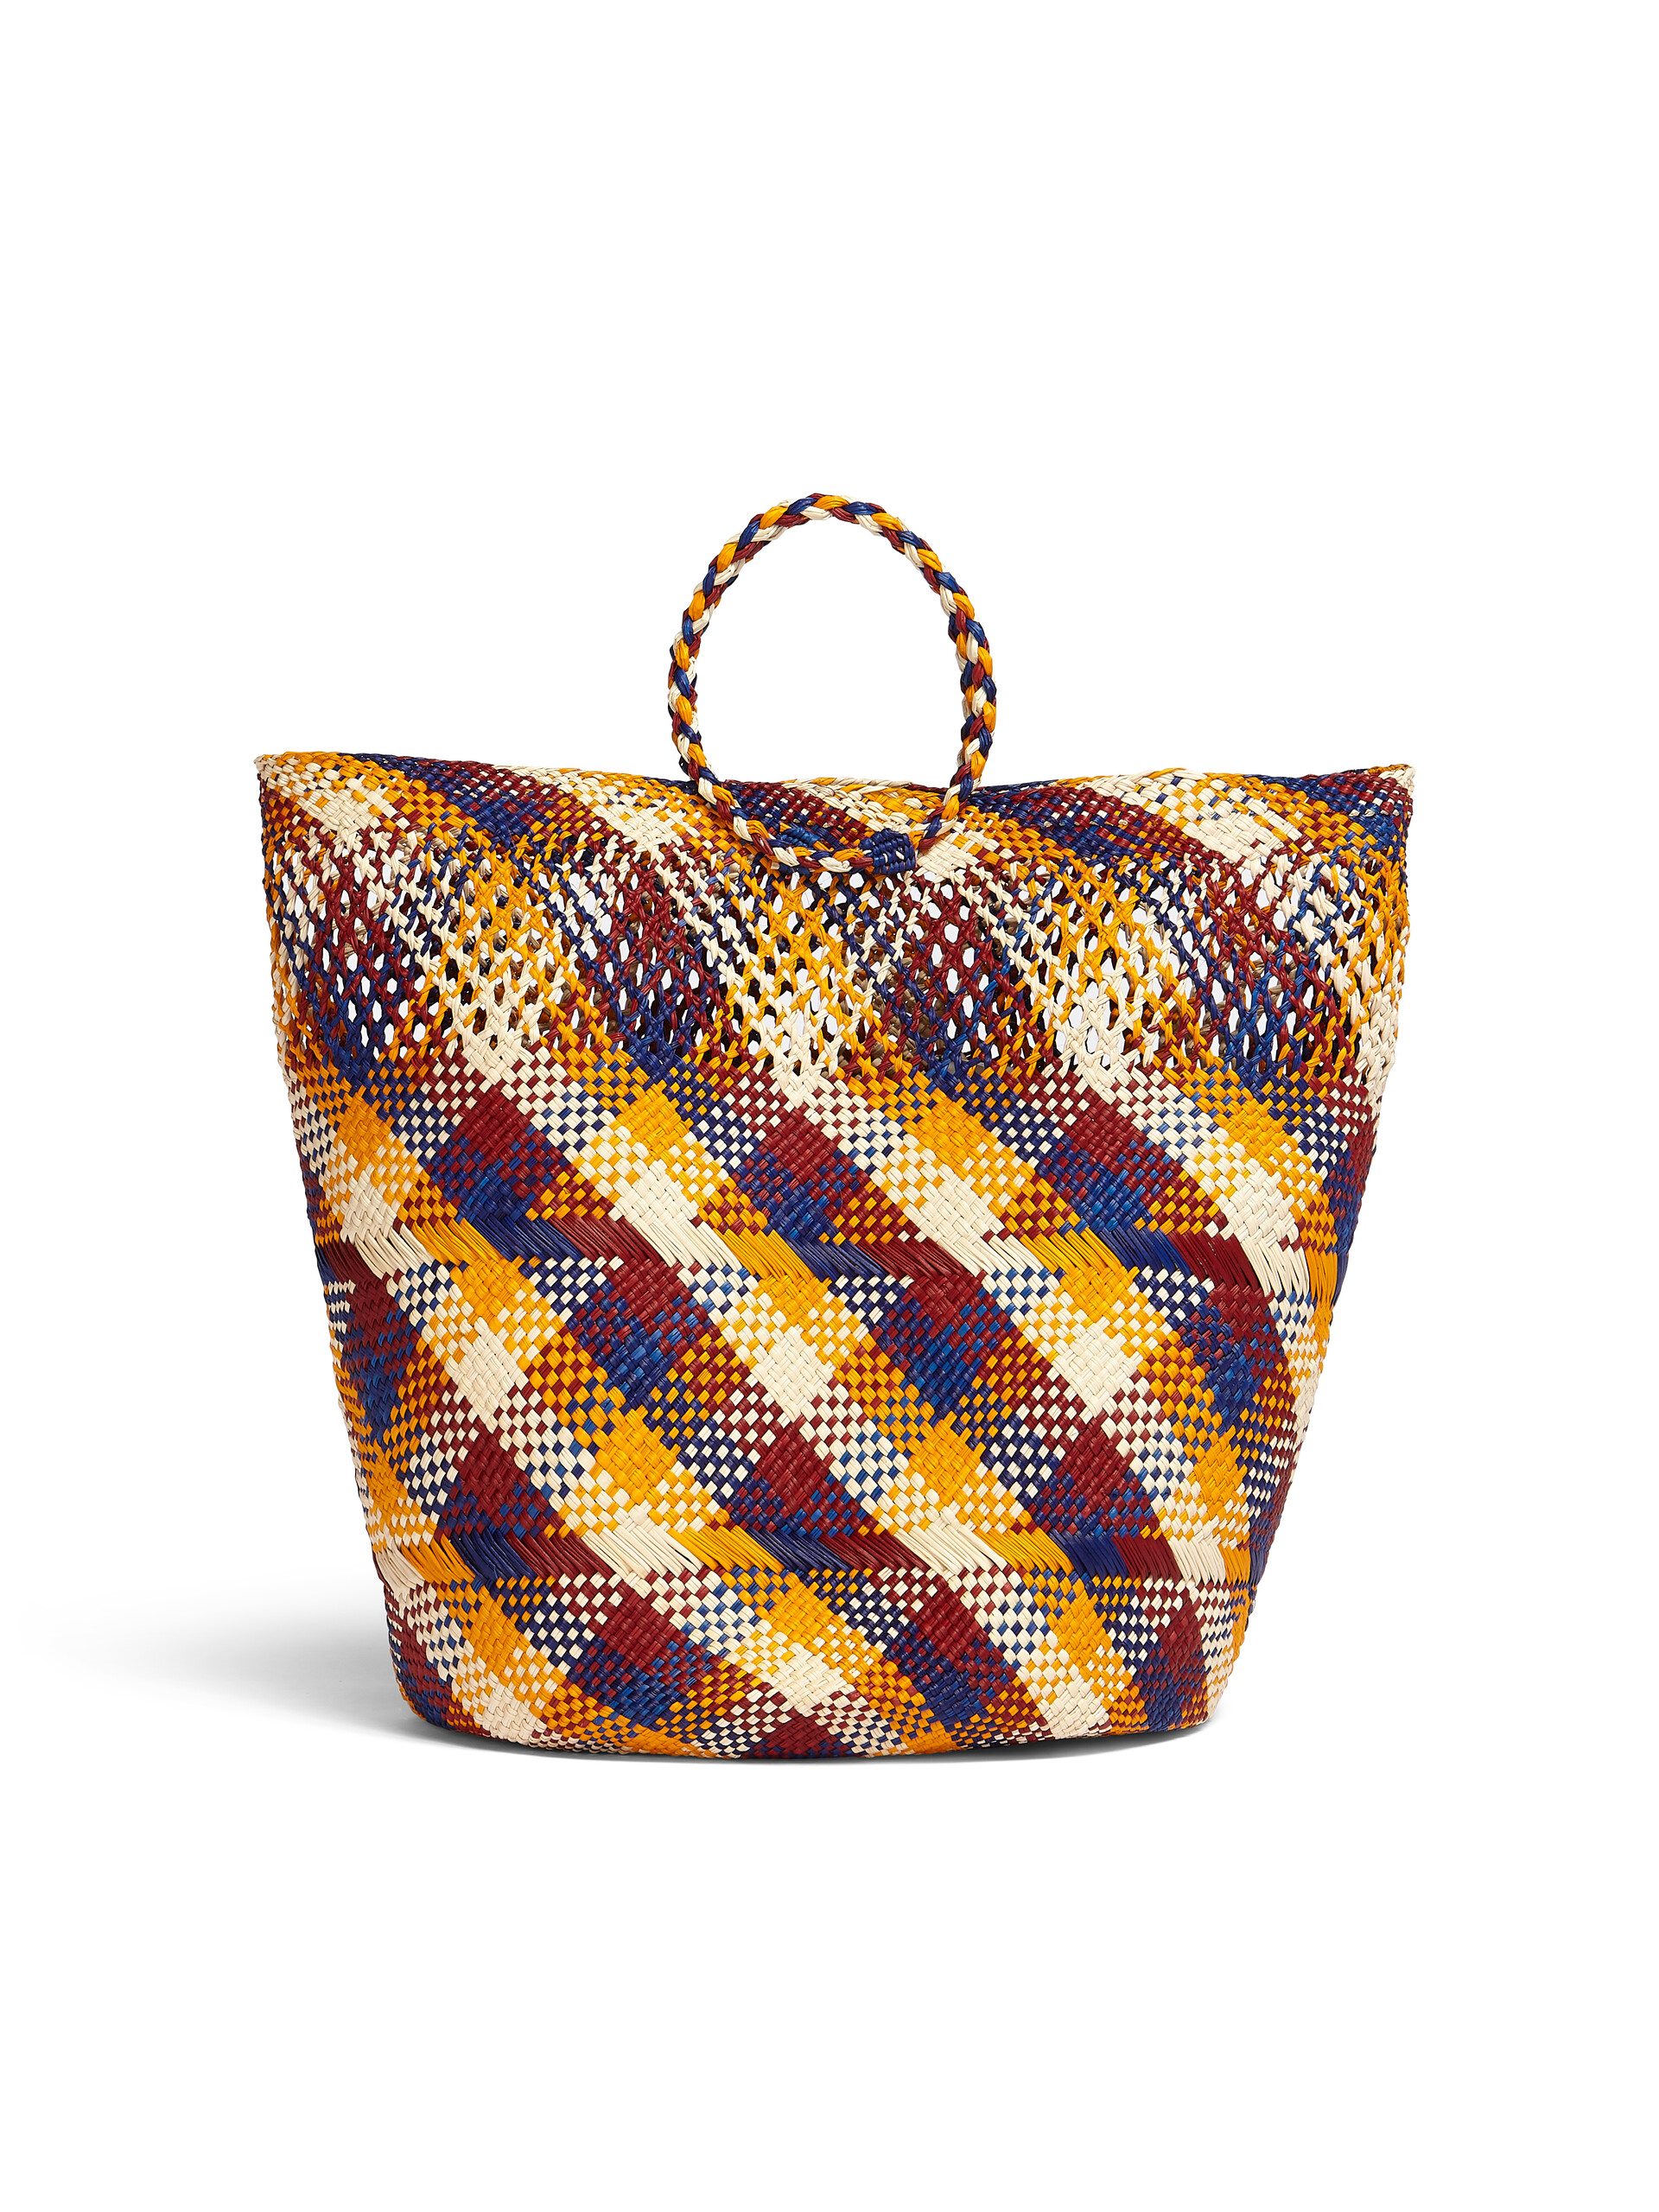 MARNI MARKET TAPIS bag in multicolor natural fiber - Bags - Image 3